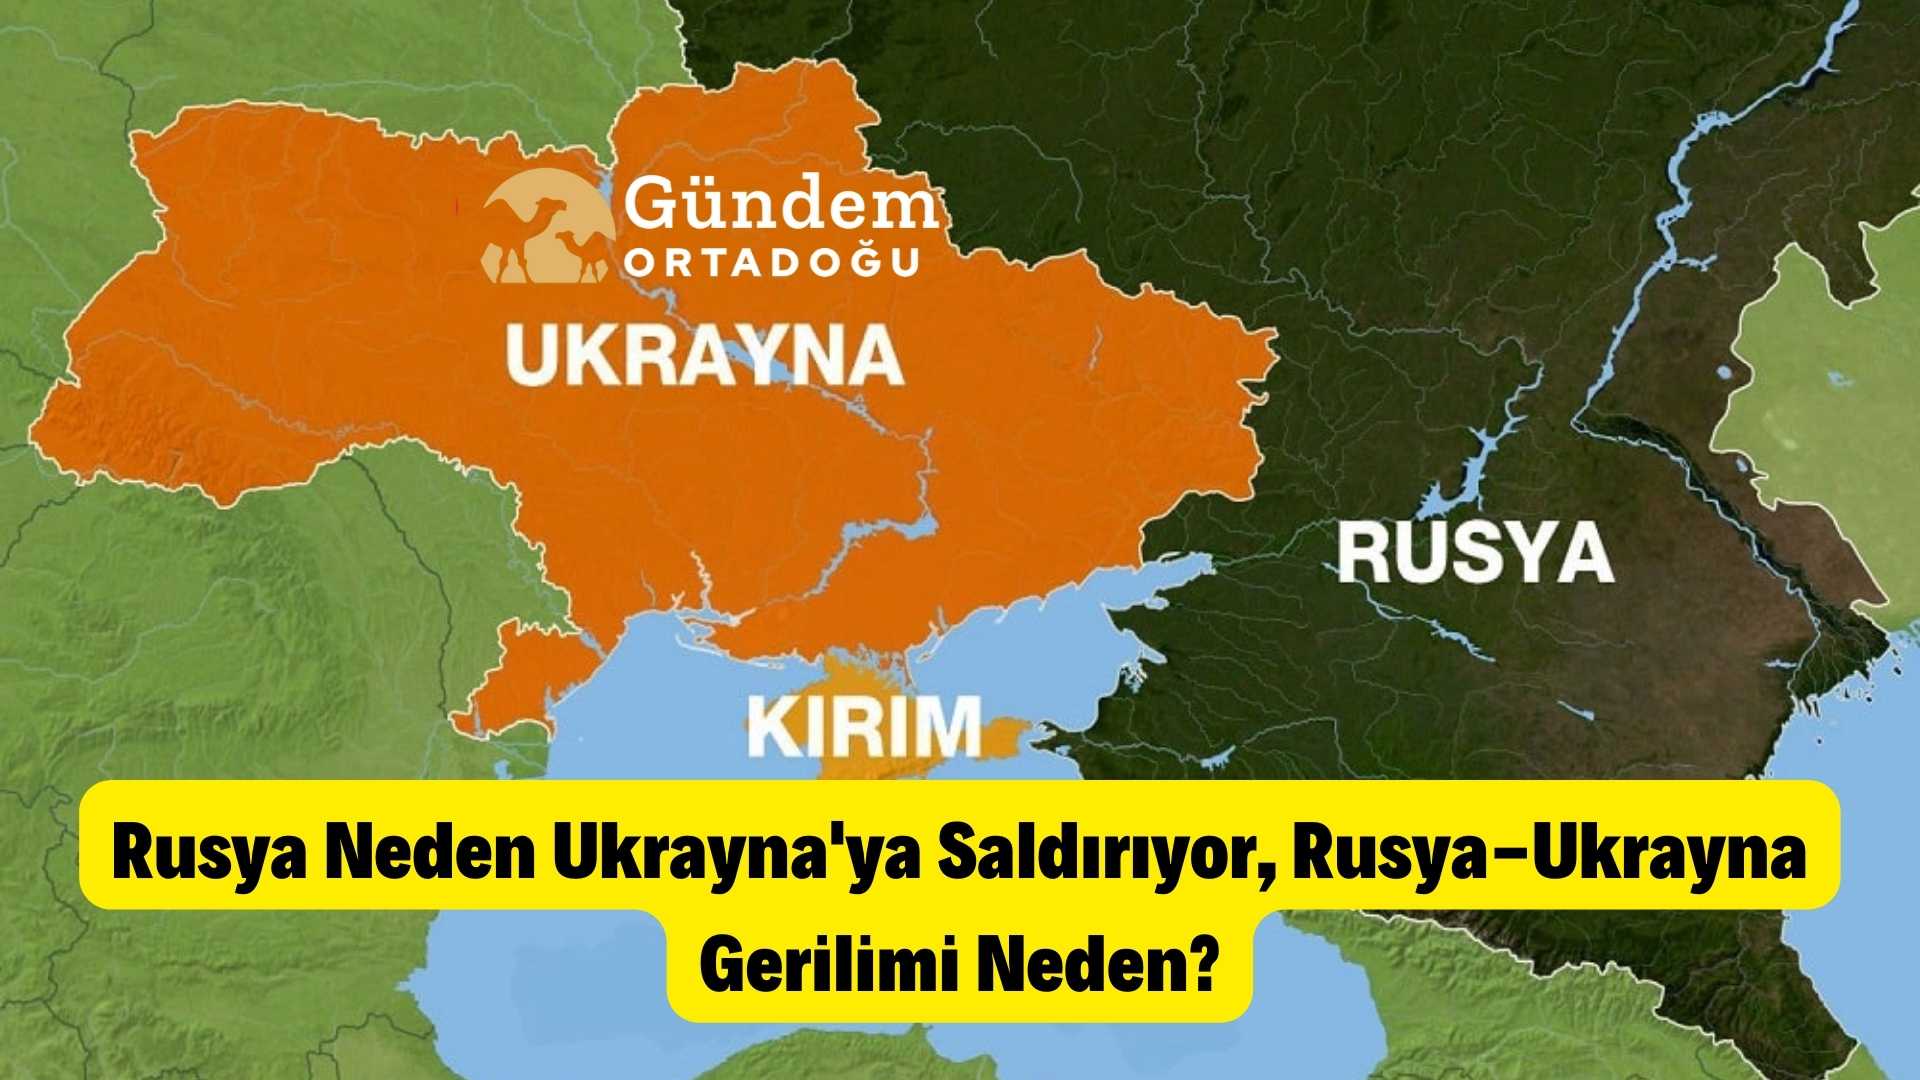 Rusya Neden Ukrayna'ya Saldırıyor? Rusya-Ukrayna Gerilimi Neden?